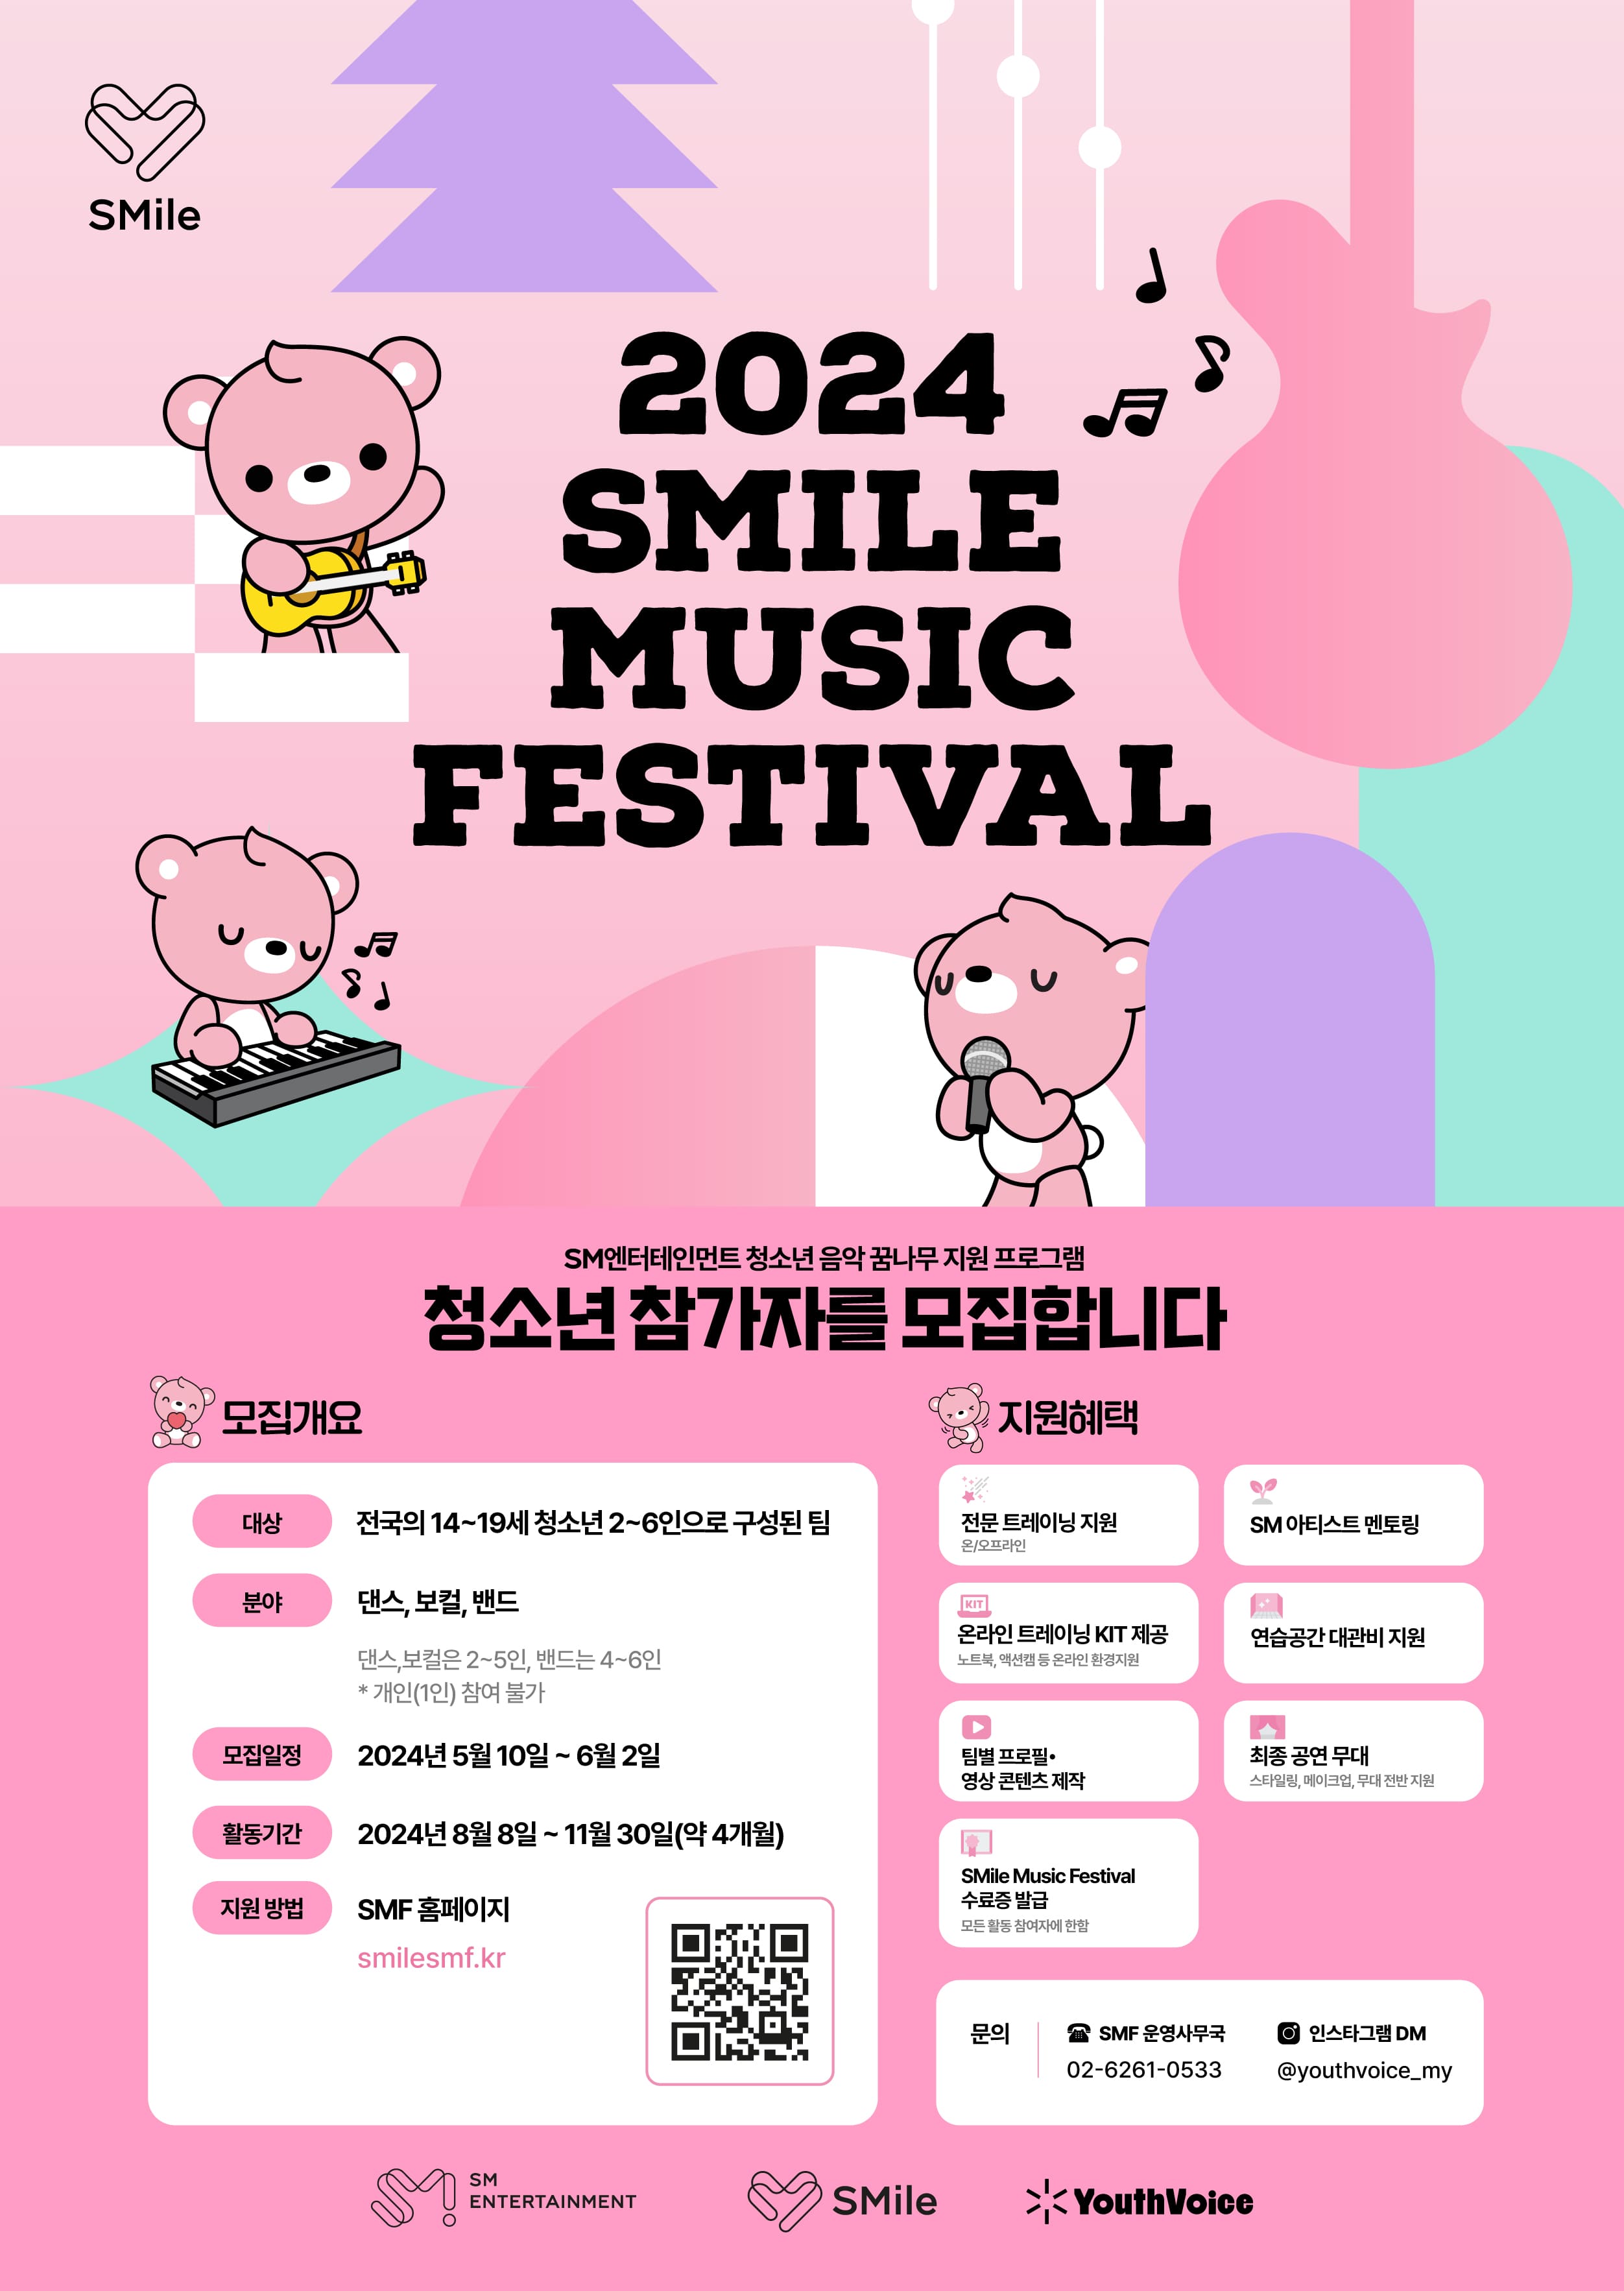 2024 SMile Music Festival 참가자 모집